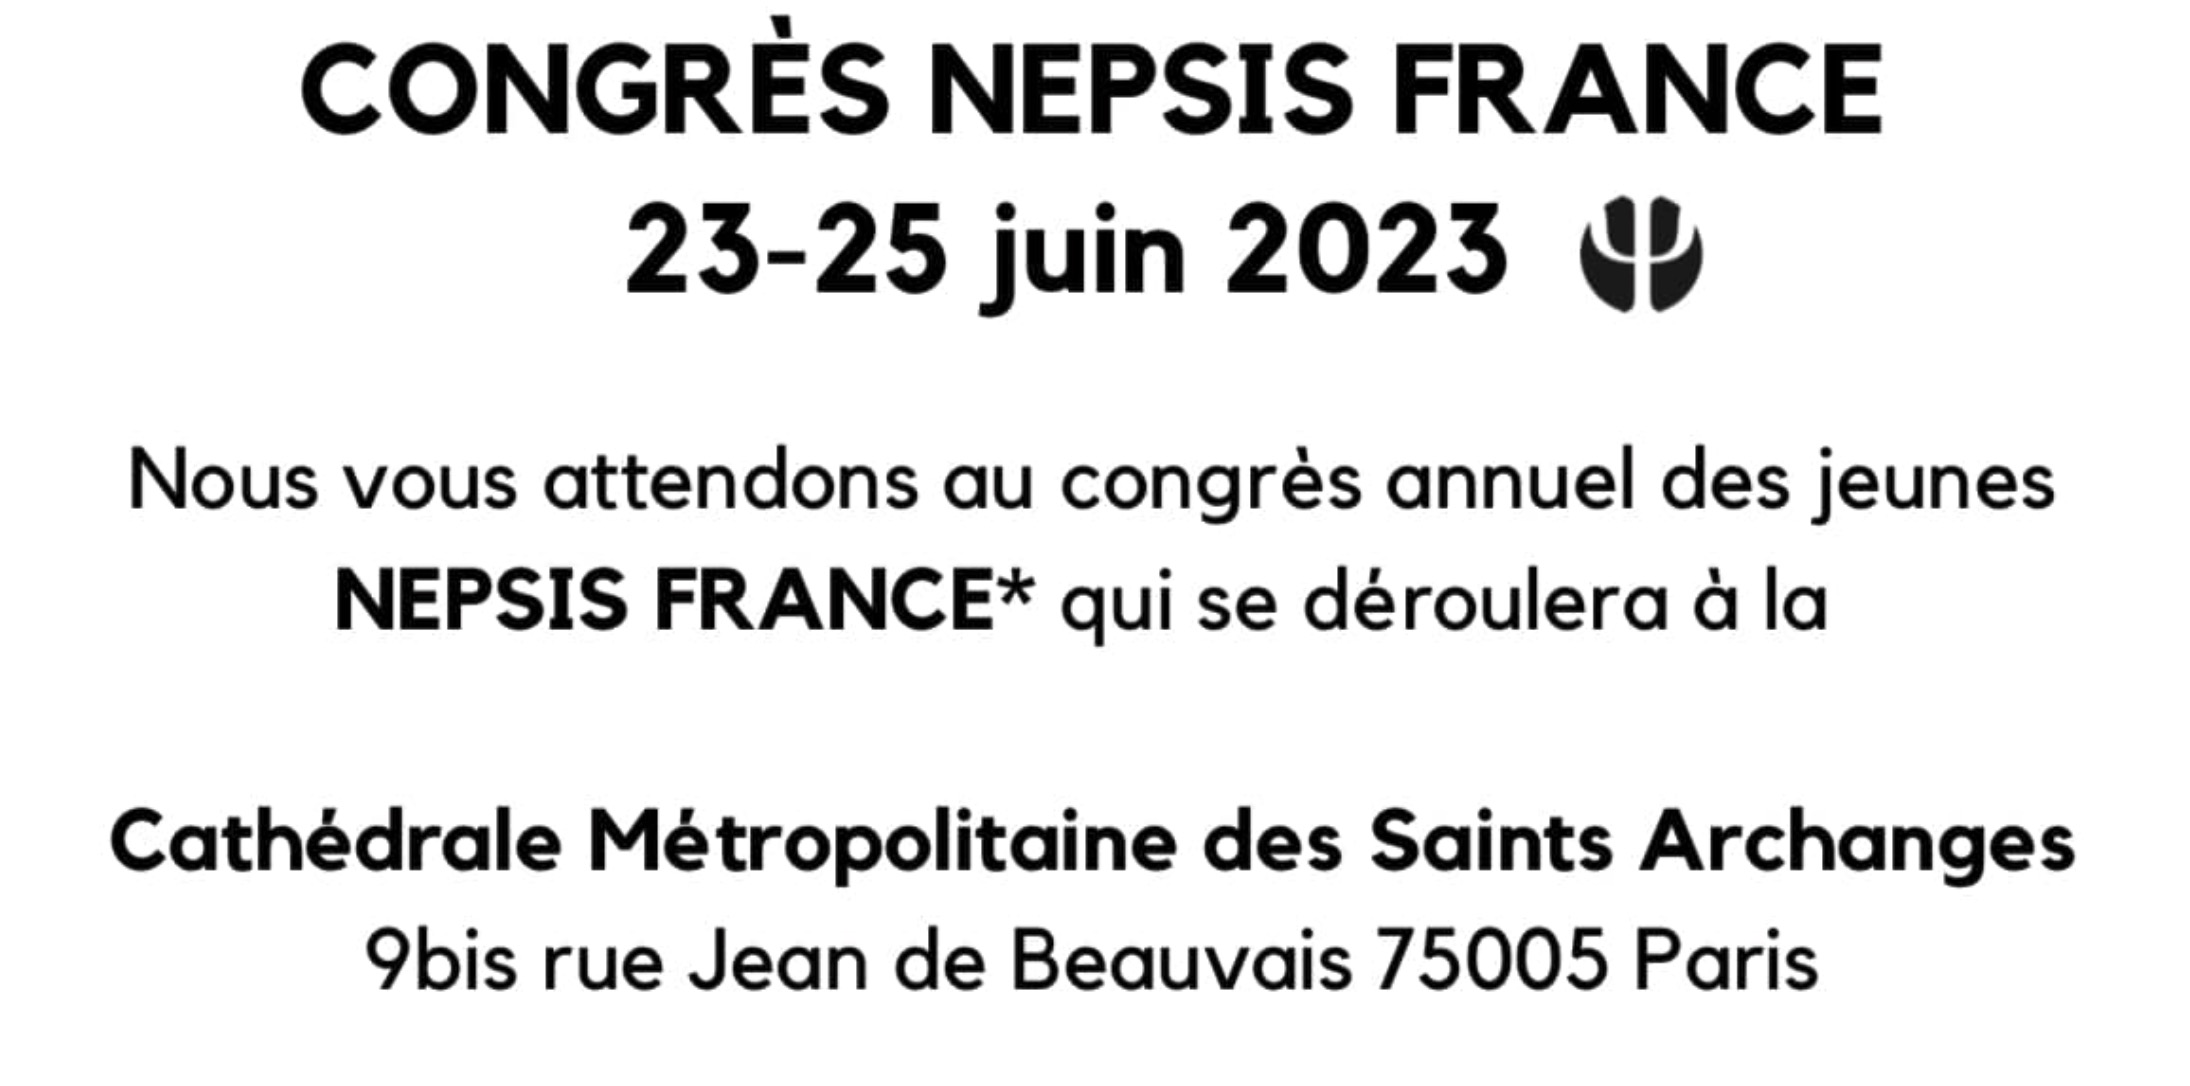 Congrès annuel nepsis du 23 au 25 juin à paris